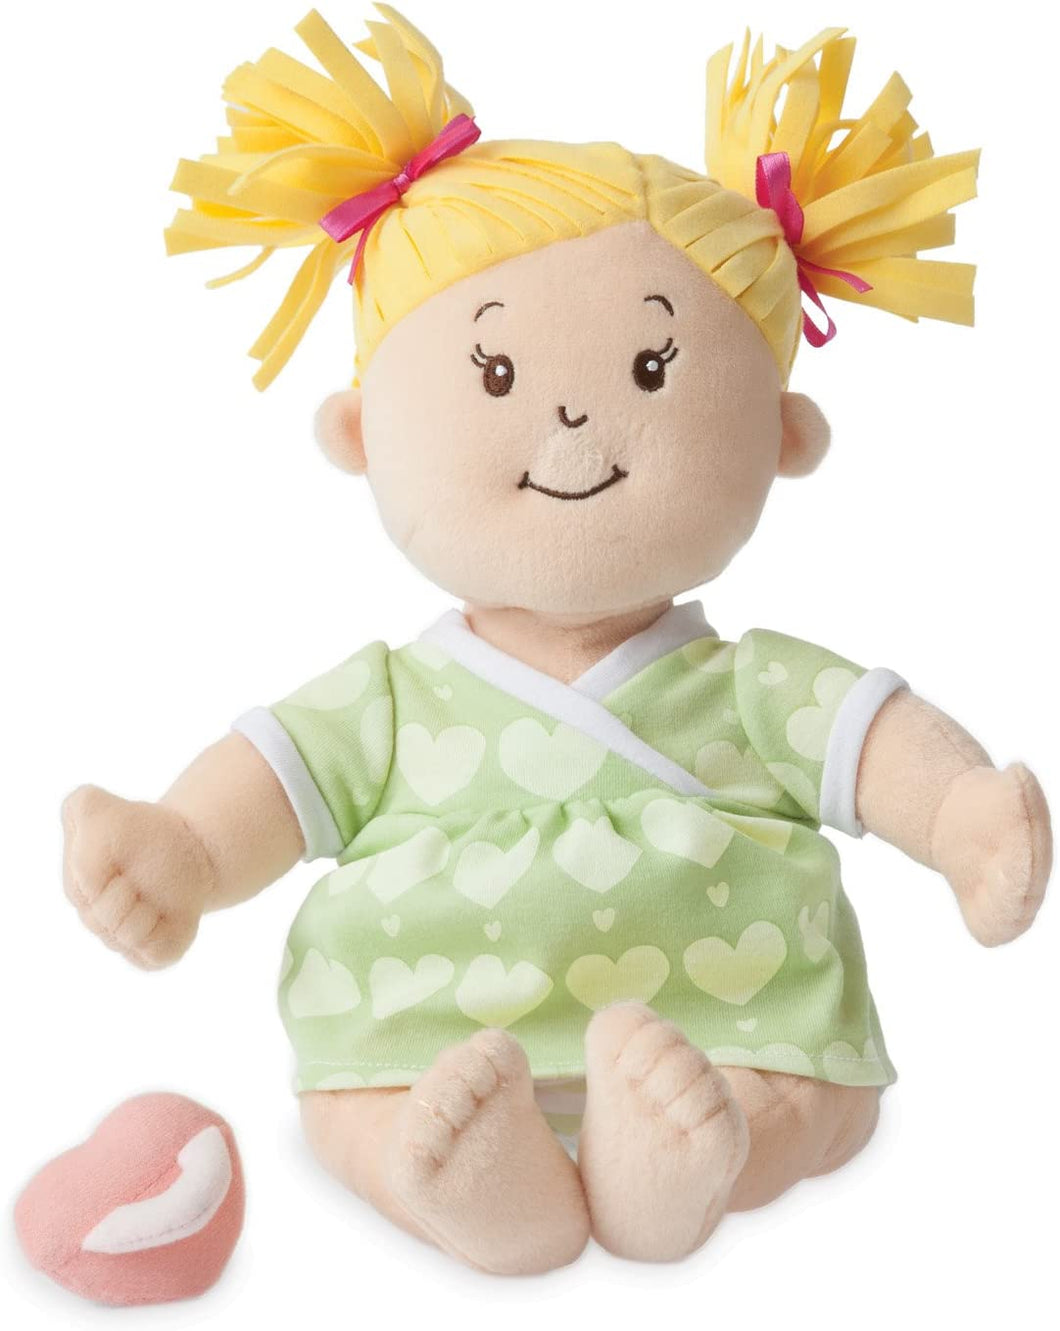 Baby Stella Blonde Soft First Baby Doll